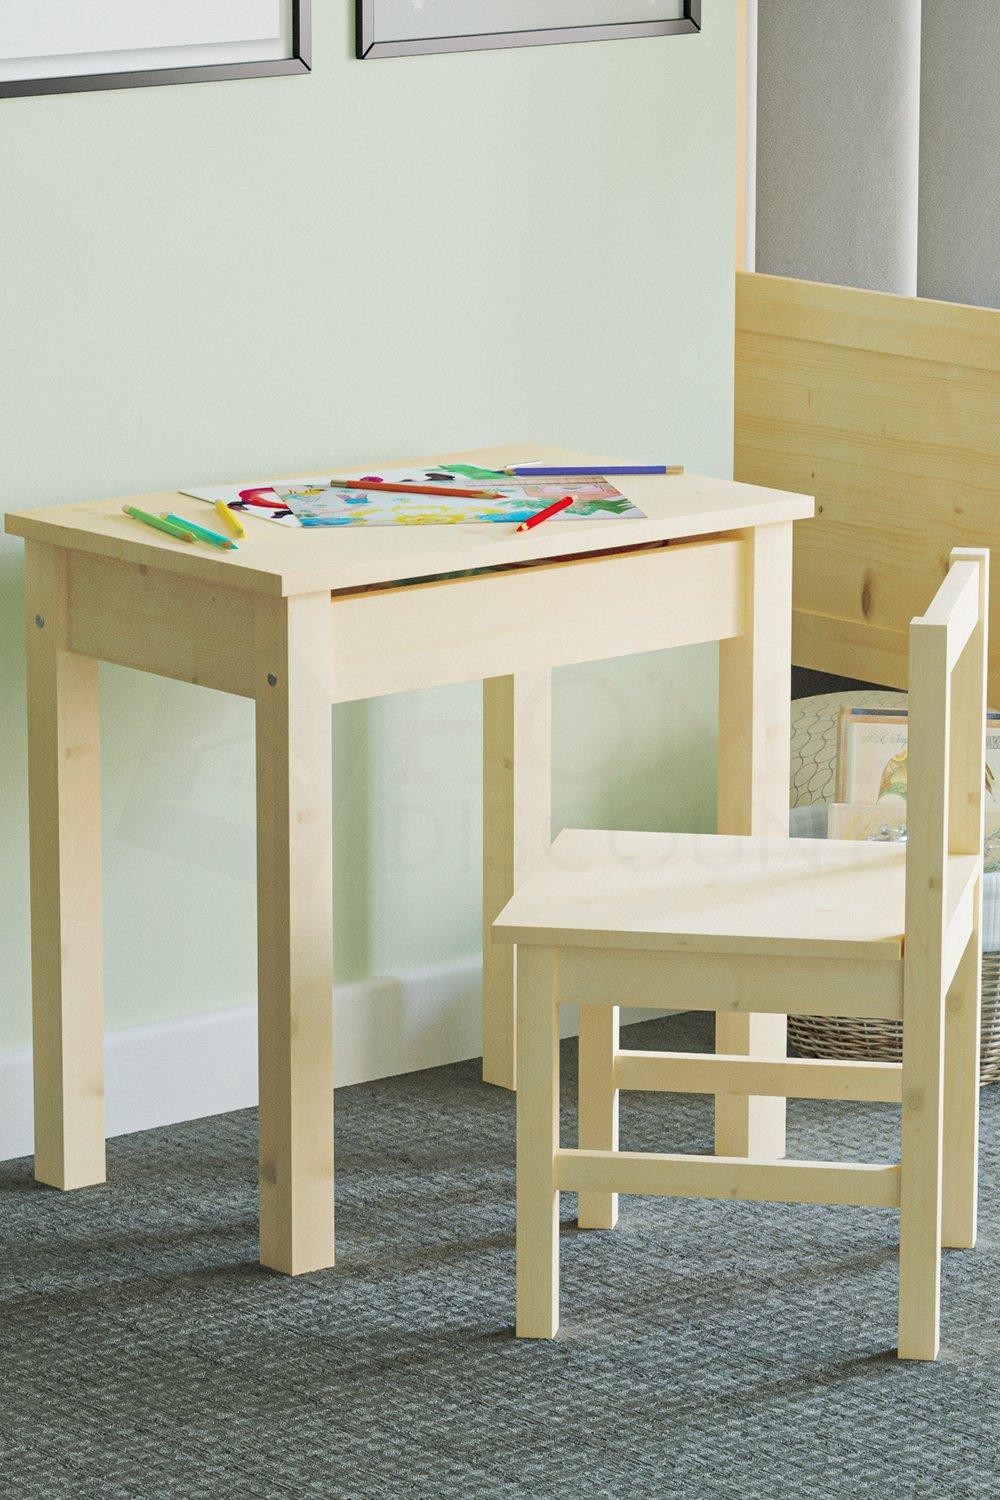 Junior Vida Aries Desk & Chair Children Kids Furniture